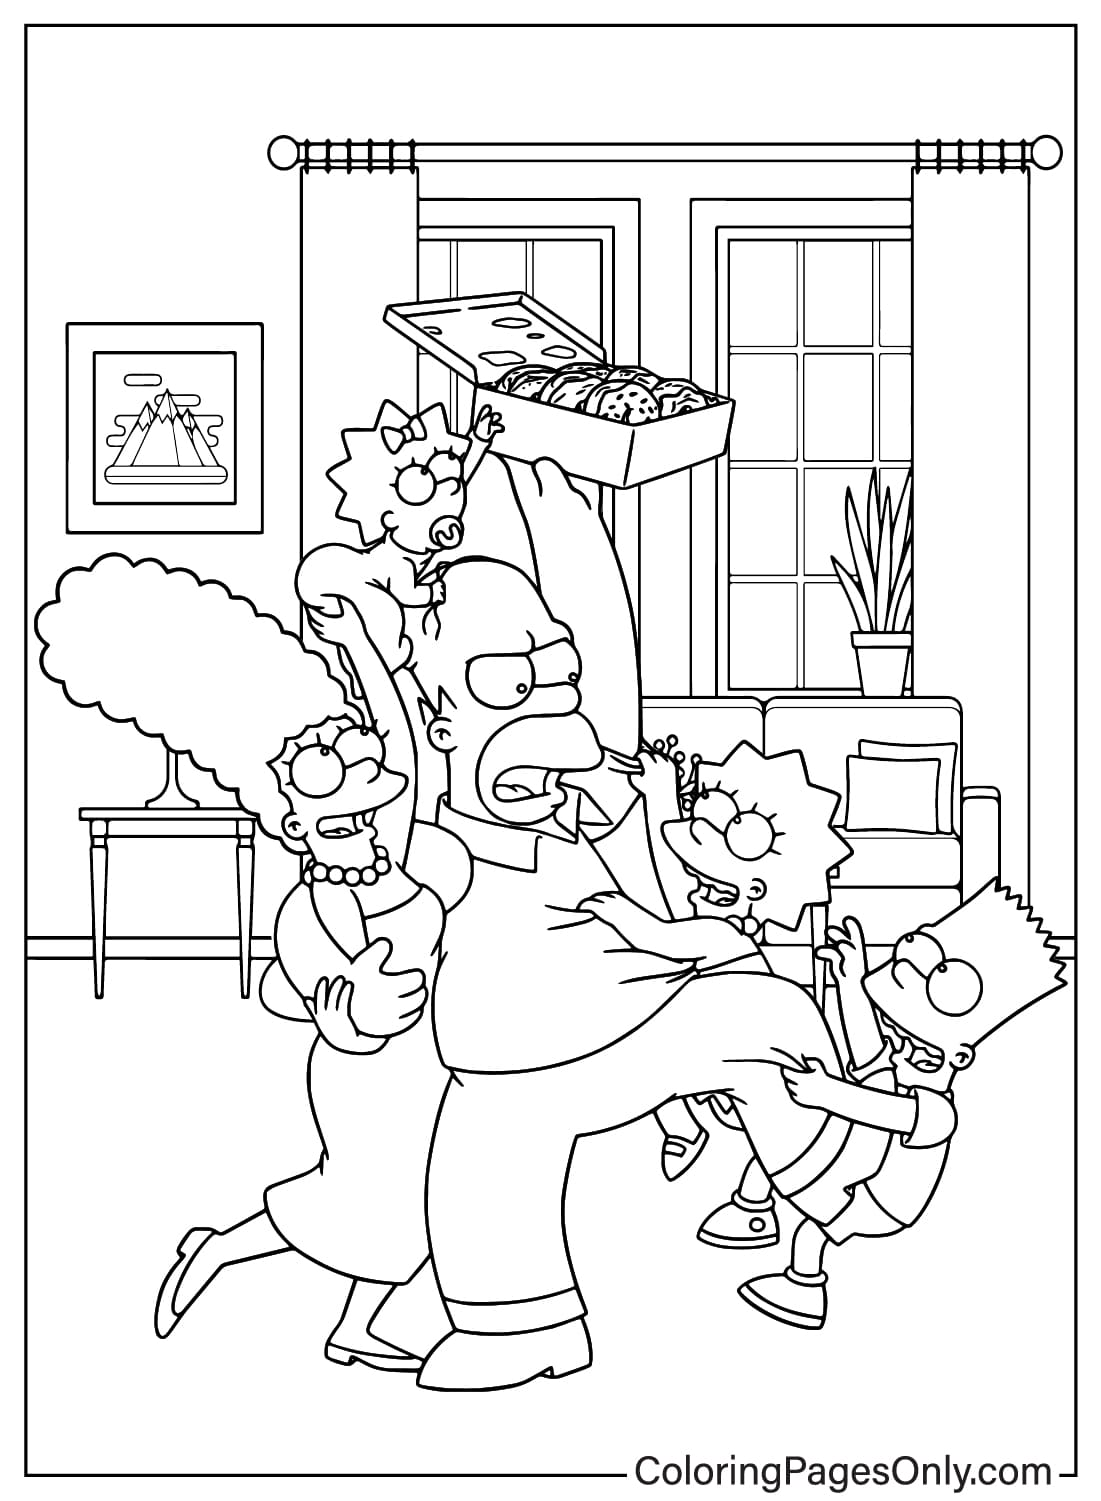 Página para colorear de Los Simpson para imprimir gratis de Los Simpson